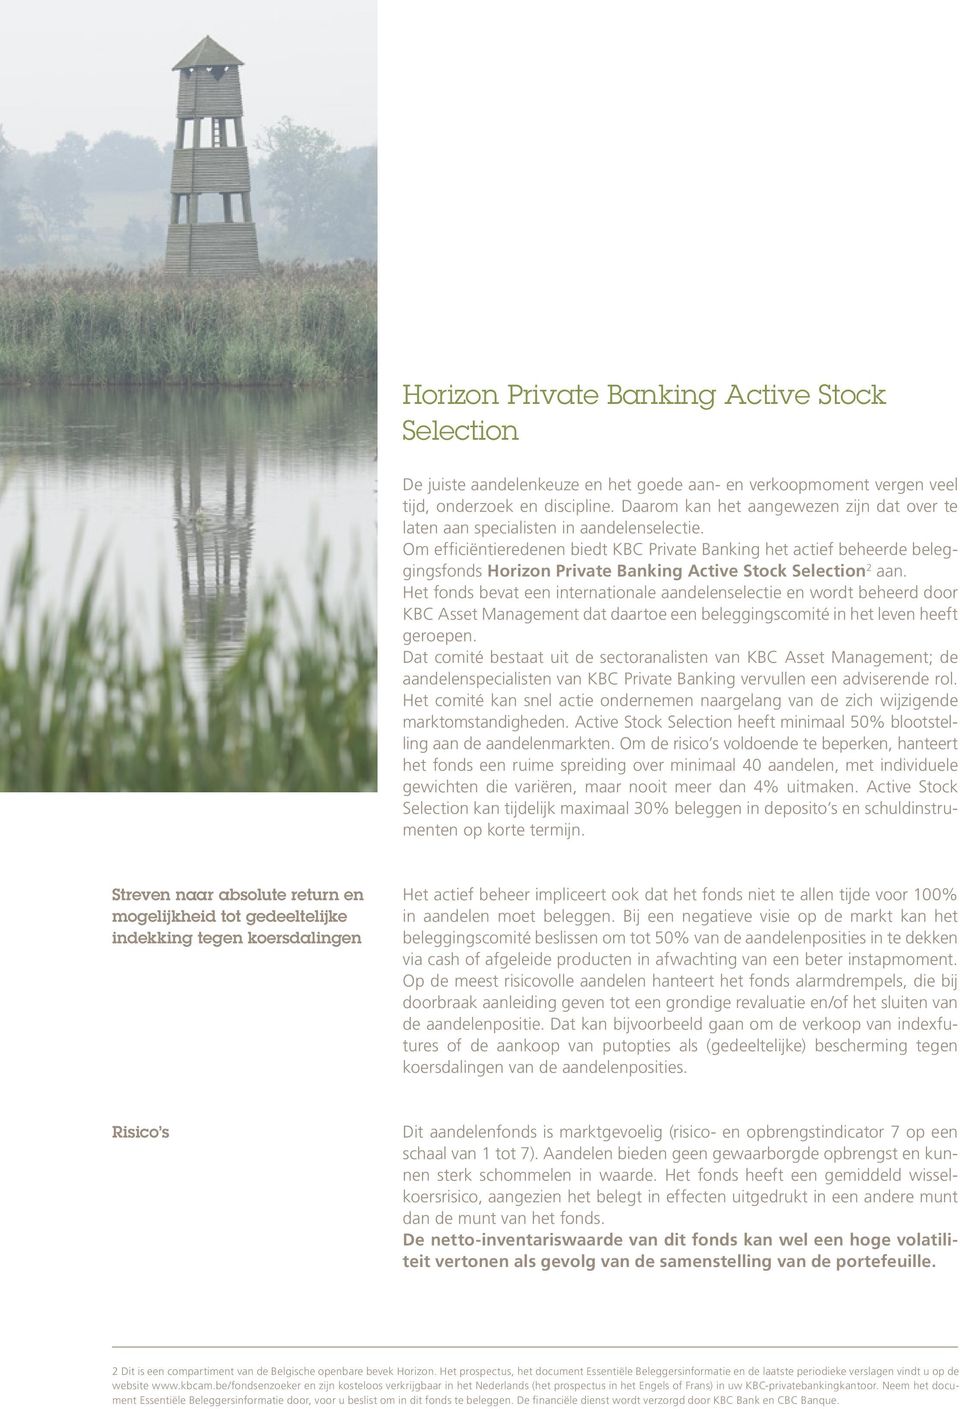 Om efficiëntieredenen biedt KBC Private Banking het actief beheerde beleggingsfonds Horizon Private Banking Active Stock Selection 2 aan.